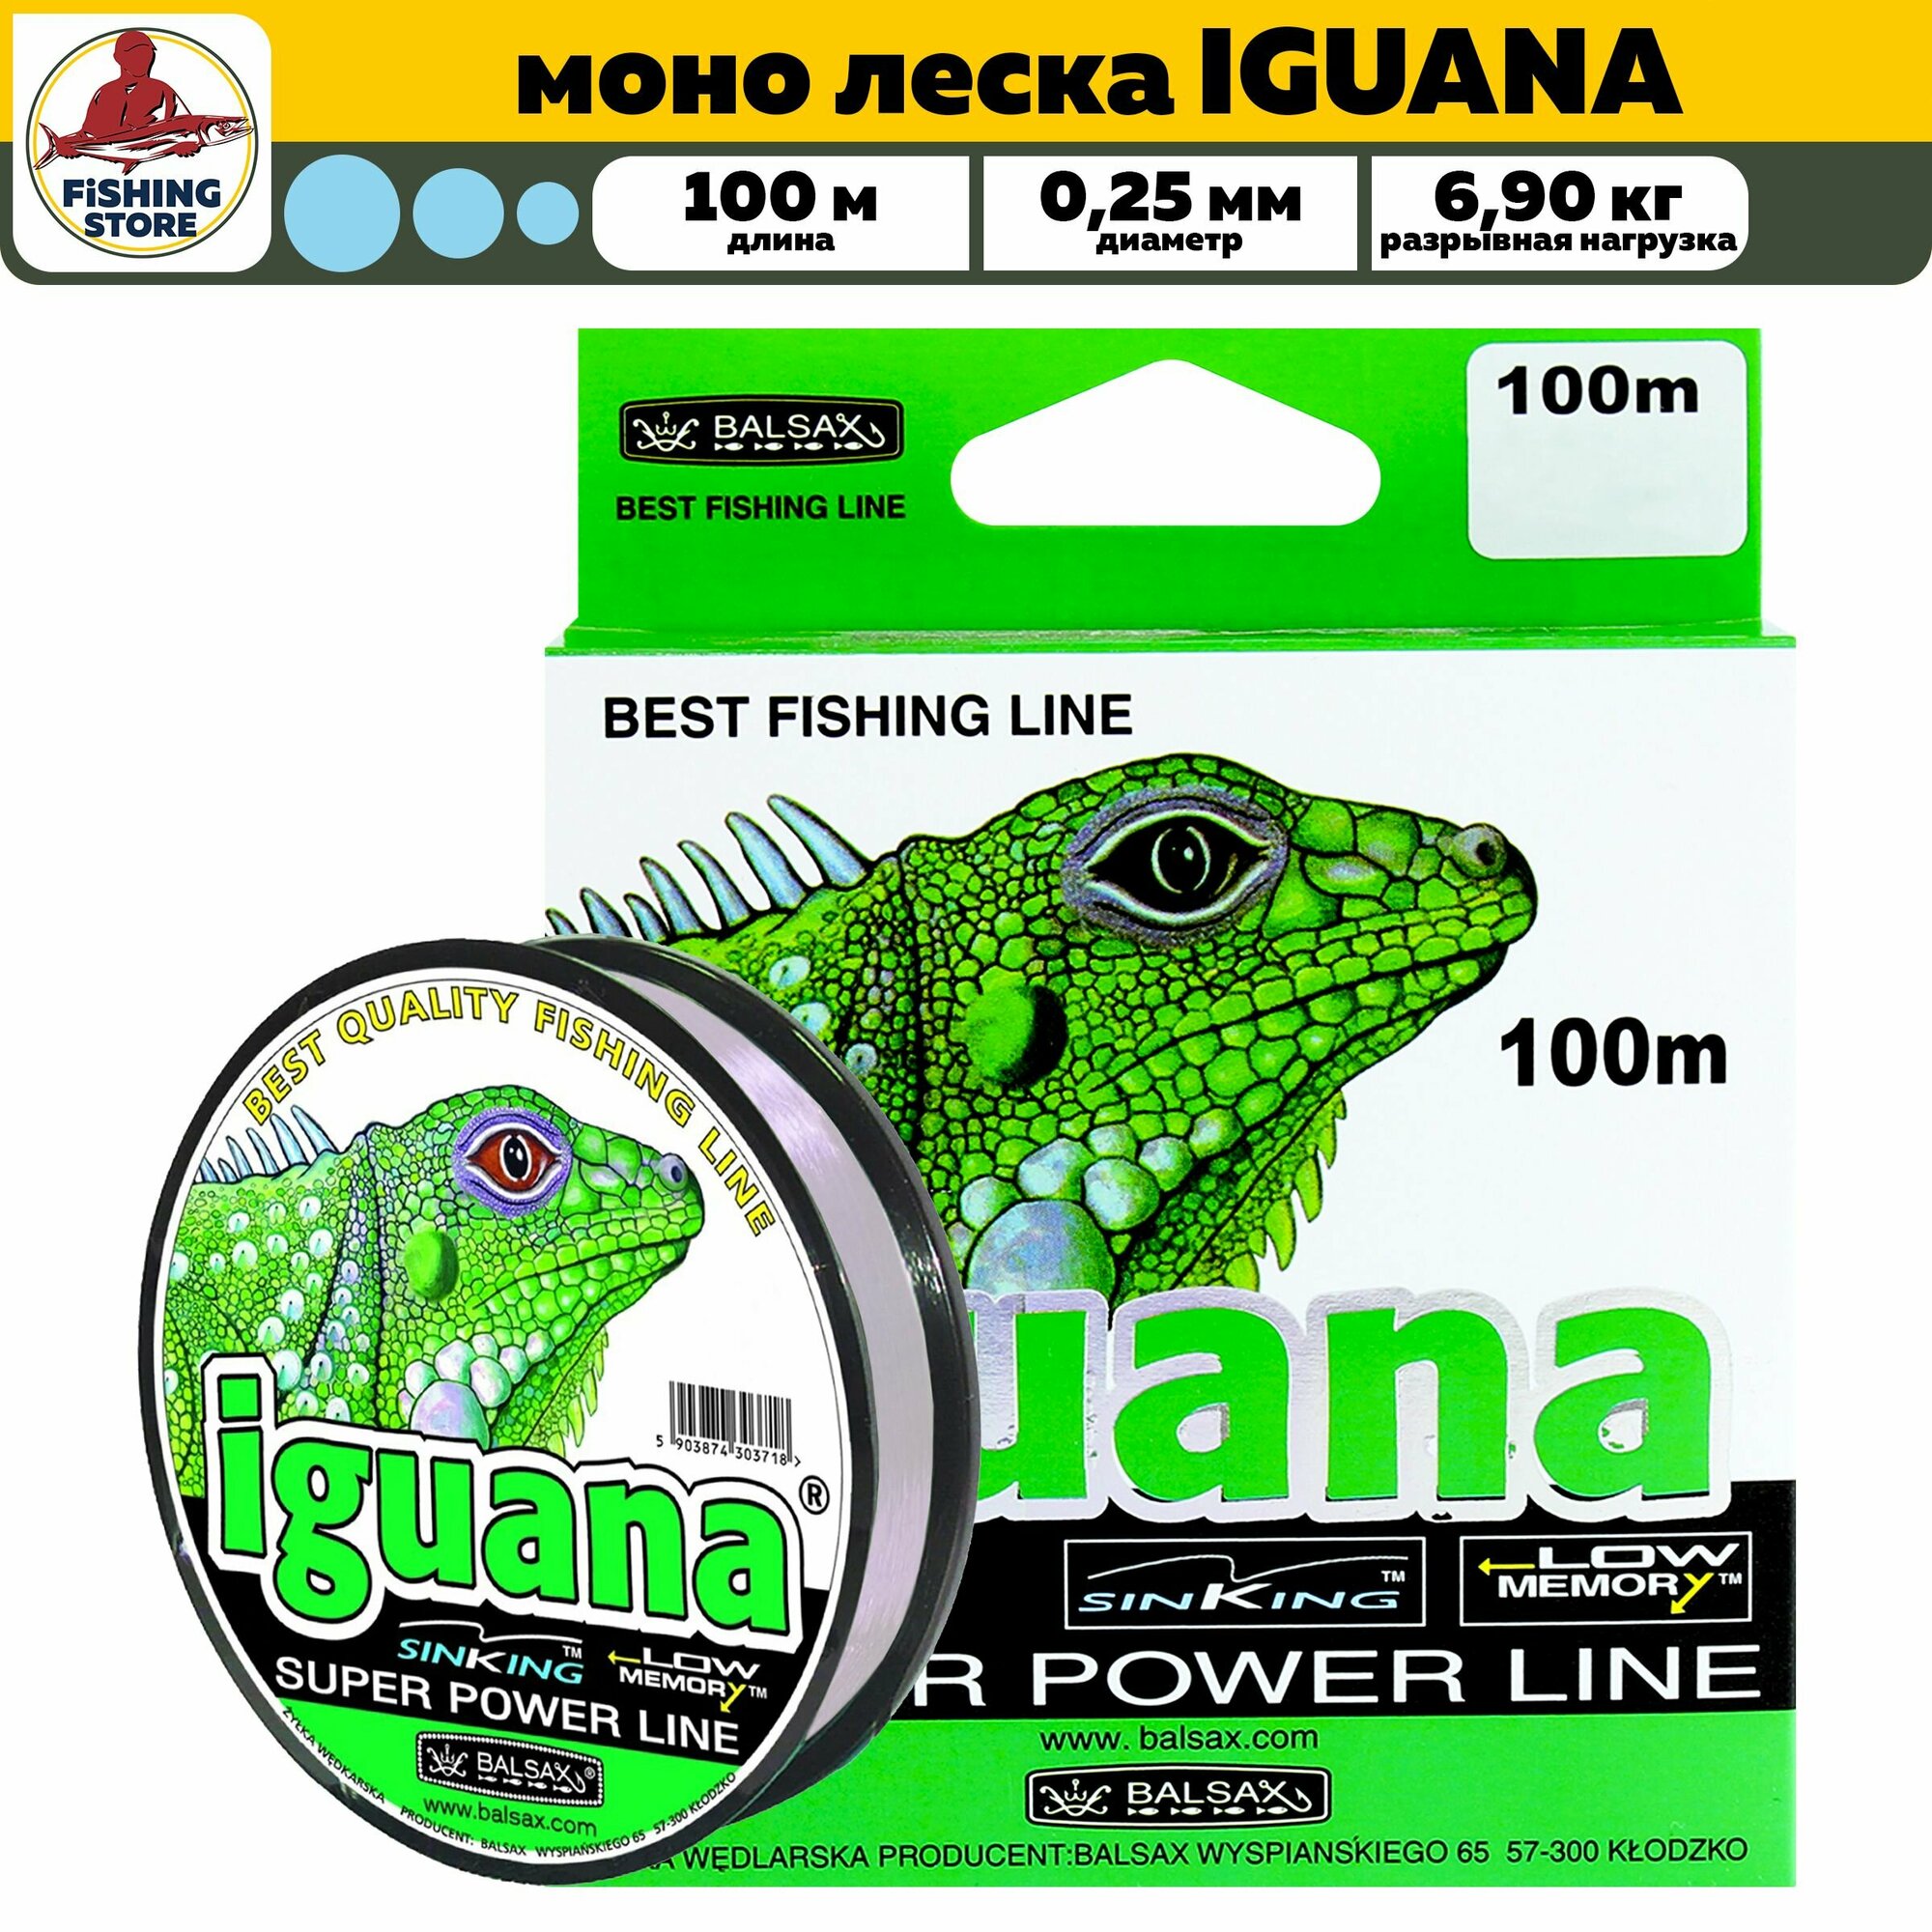 Монофильная леска Balsax Iguana Super power line 100м 0,25 (прозрачная) 6,90 кг / леска для рыбалки / монка / леска рыболовная